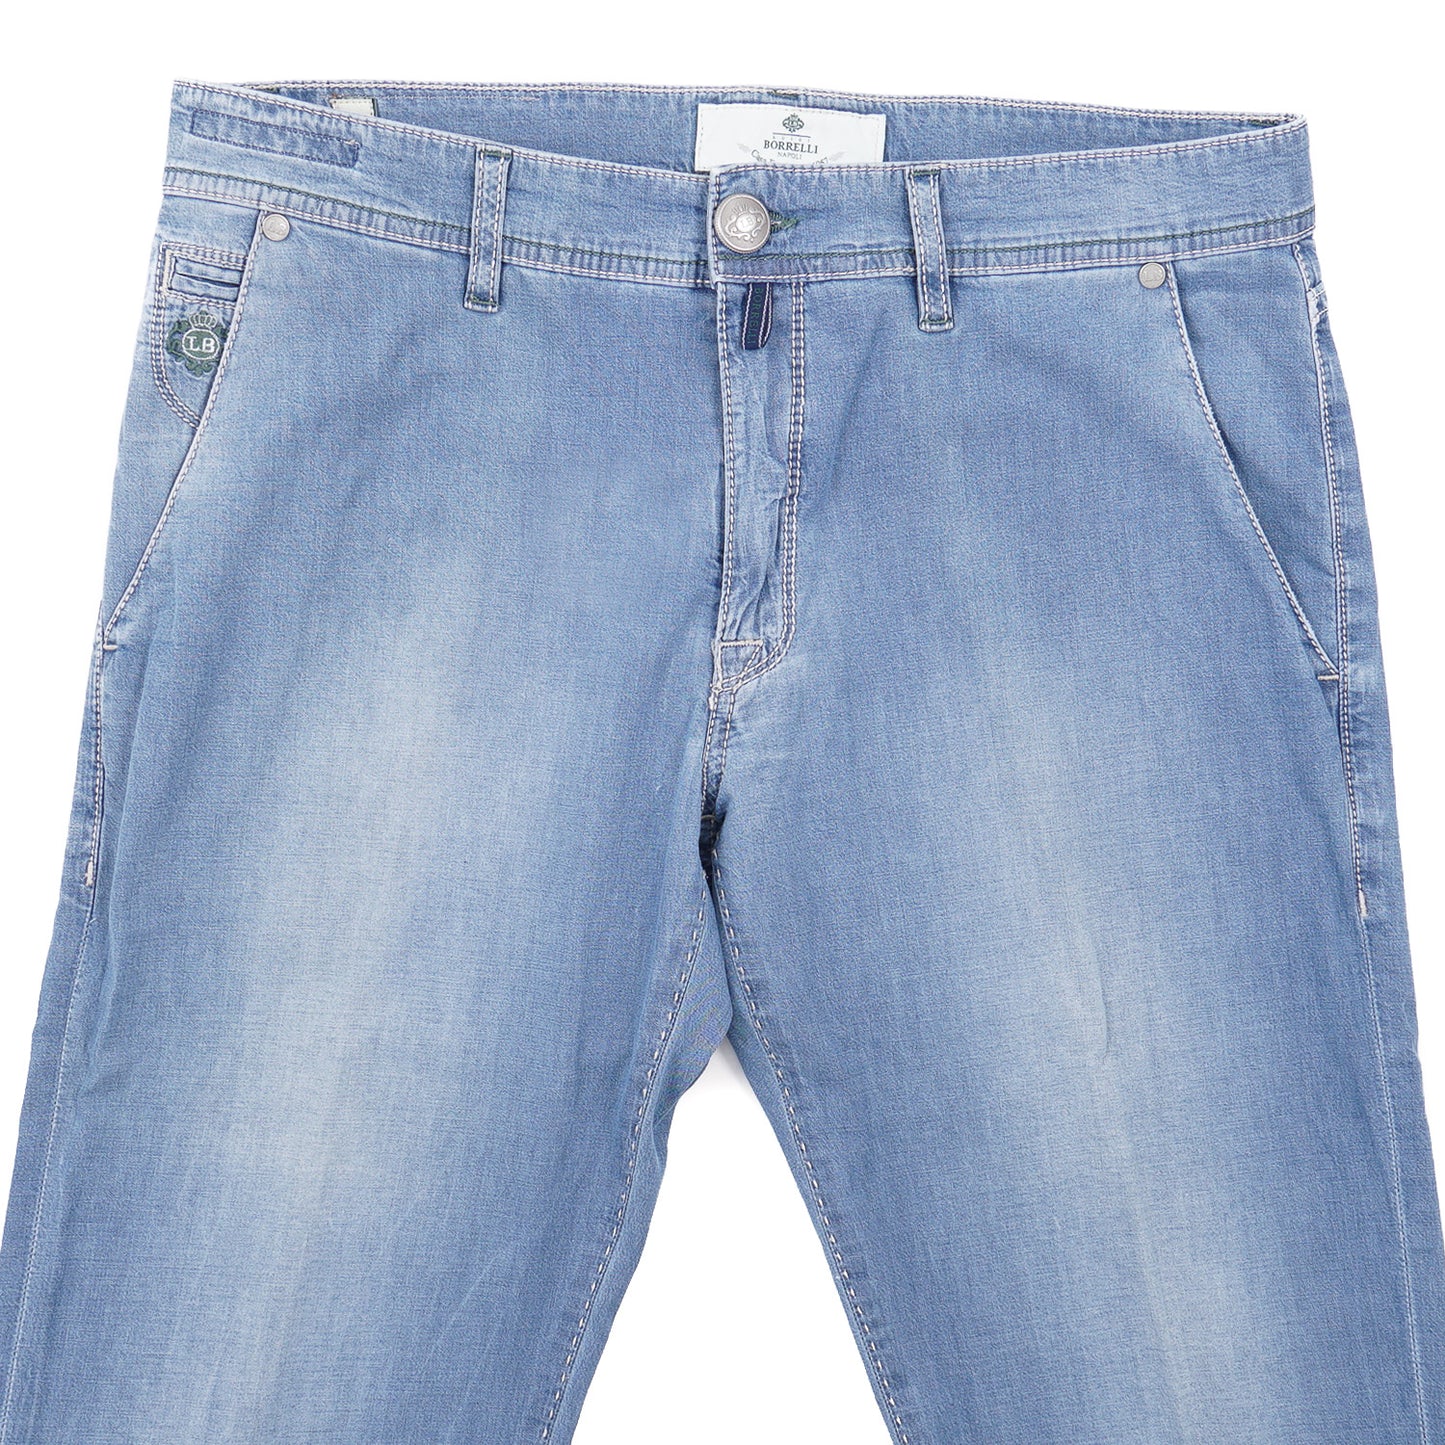 Luigi Borrelli Slim-Fit Lightweight Jeans - Top Shelf Apparel